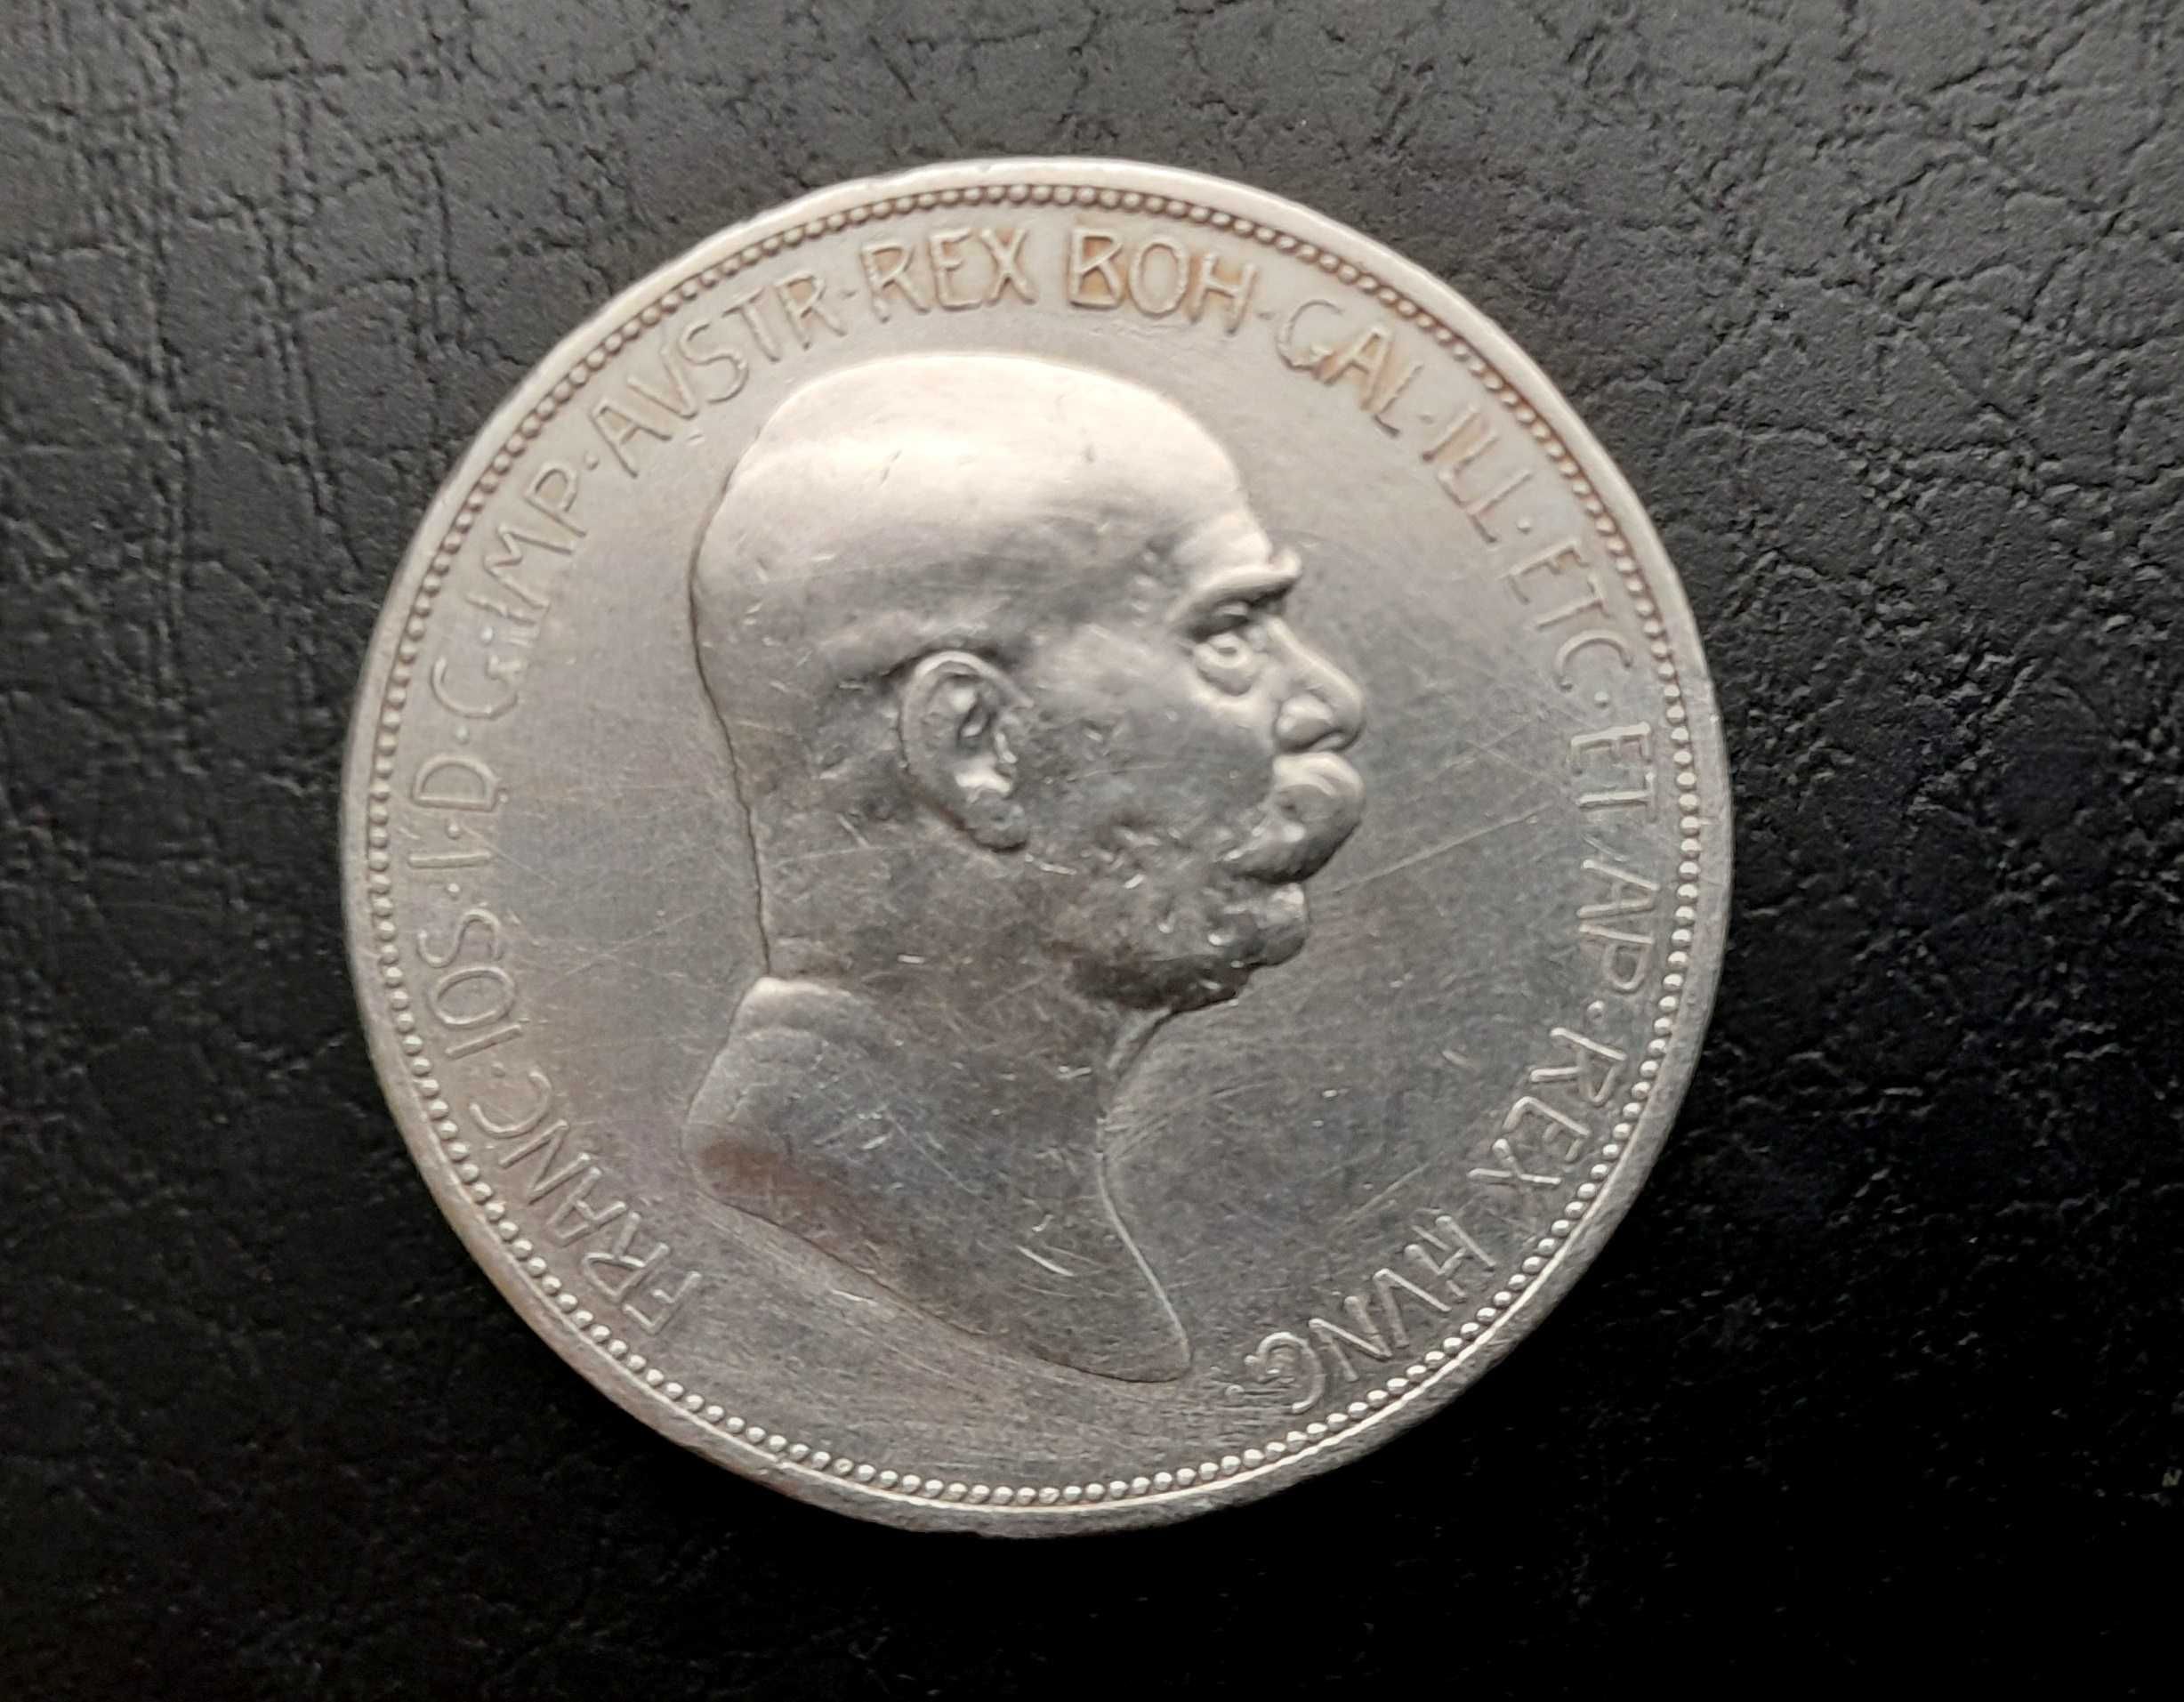 Серебряные монеты Латвии, ЮАР, США 1942, 1944 г. Мальта 1972 г.